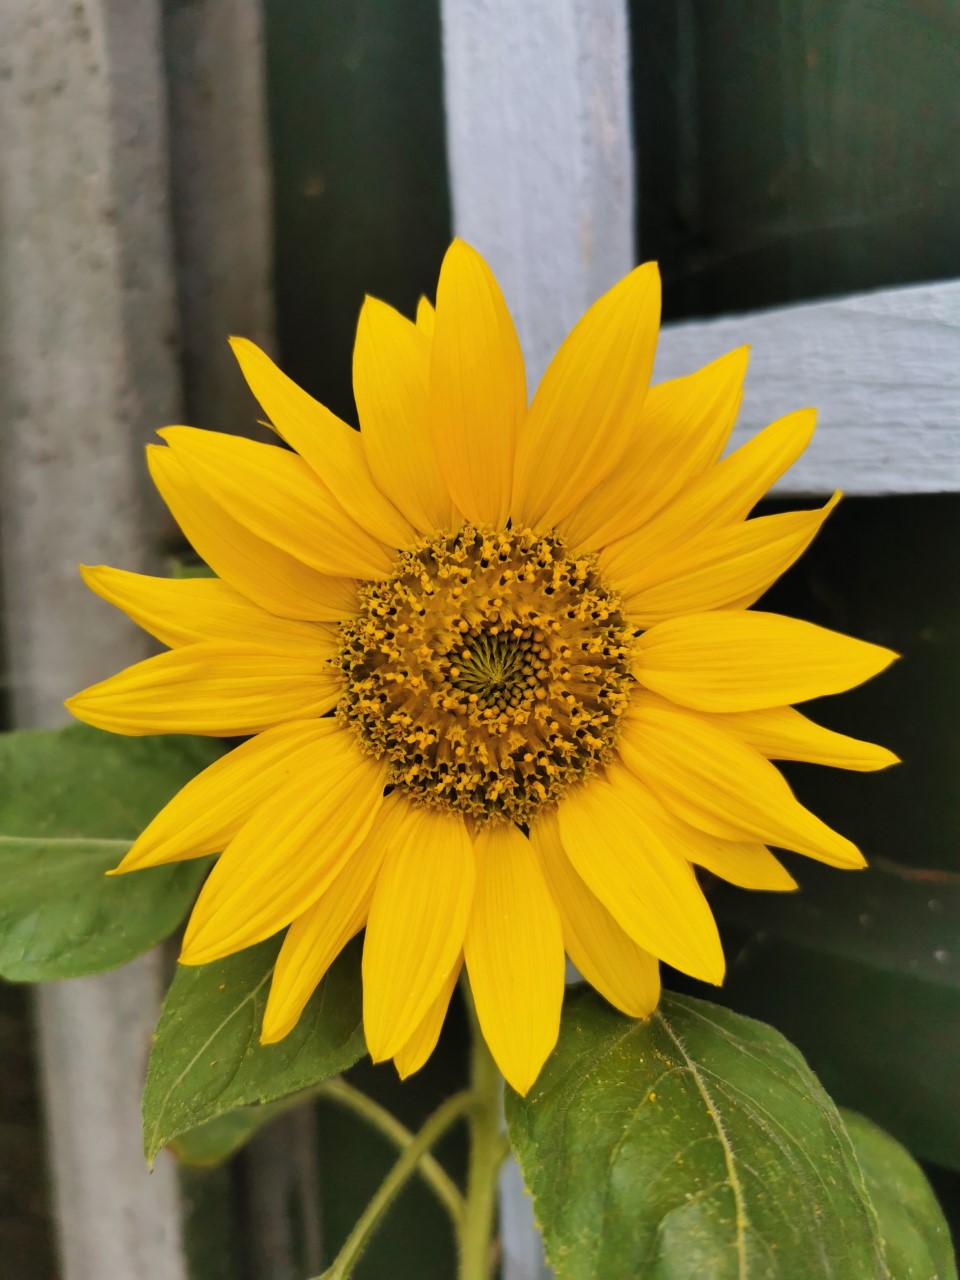 Anna S' sunflower